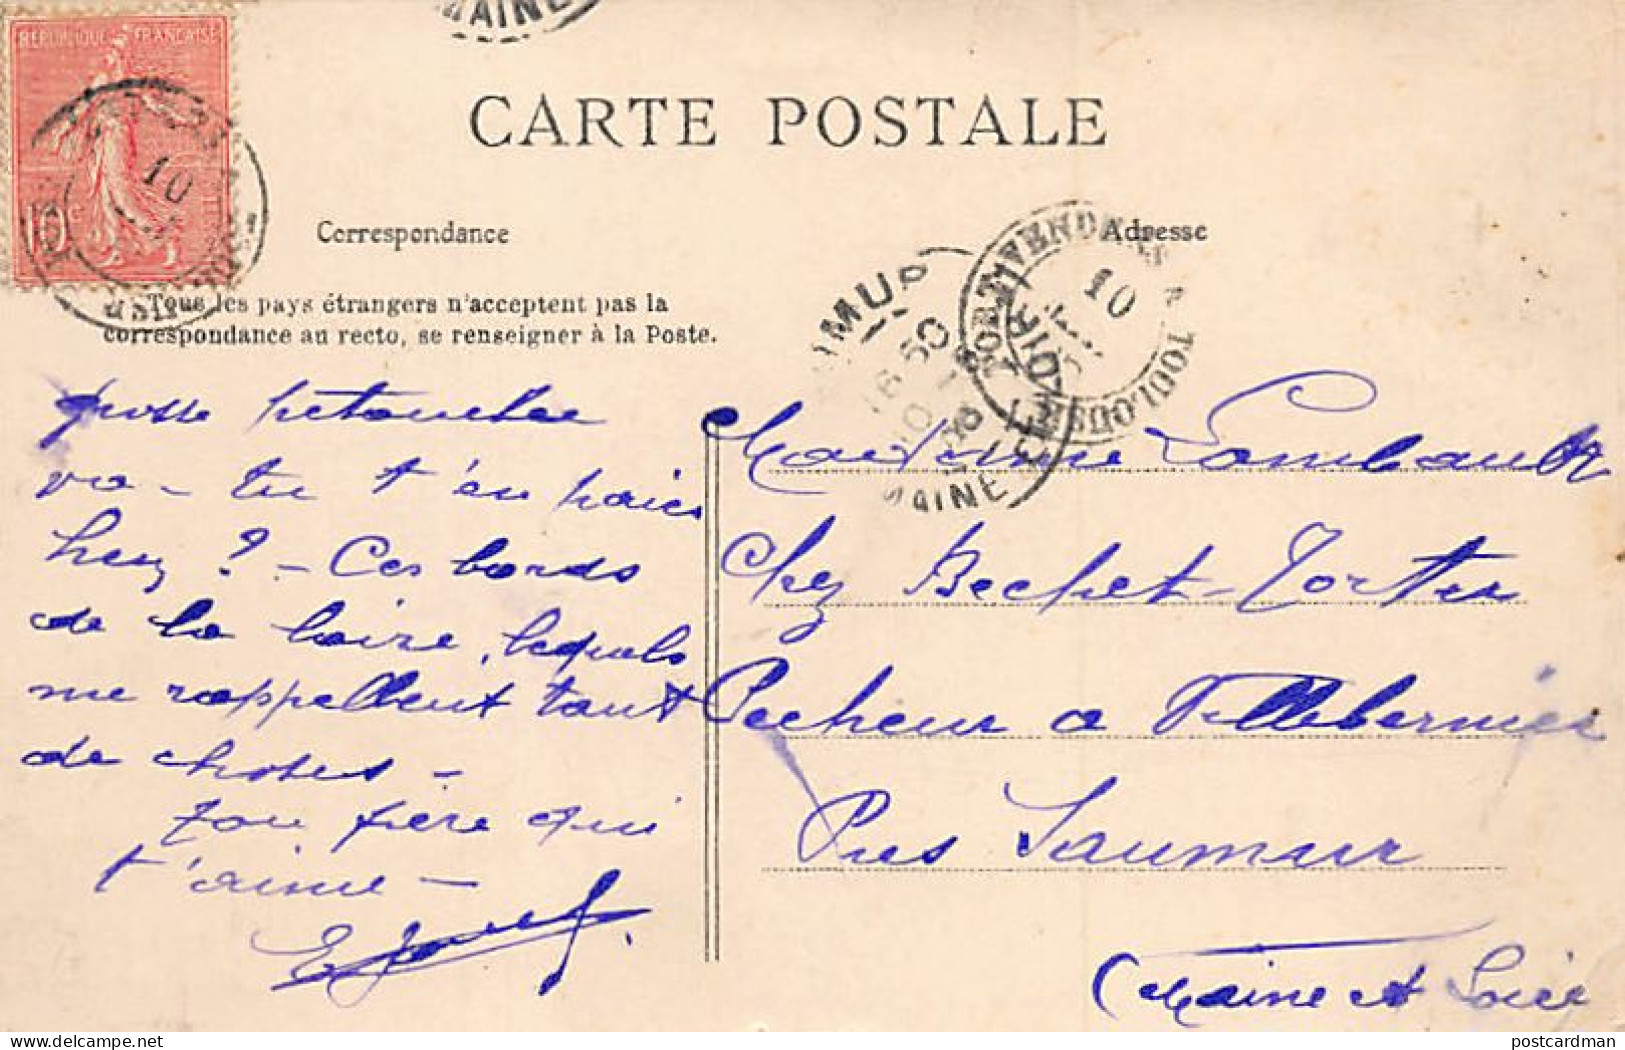 Algérie - ORAN - Rue D'Orléans - Salon De Coiffure - Pharmacie - Cie De Navigation Mixte - Ed. Collection Idéale P.S. 91 - Oran